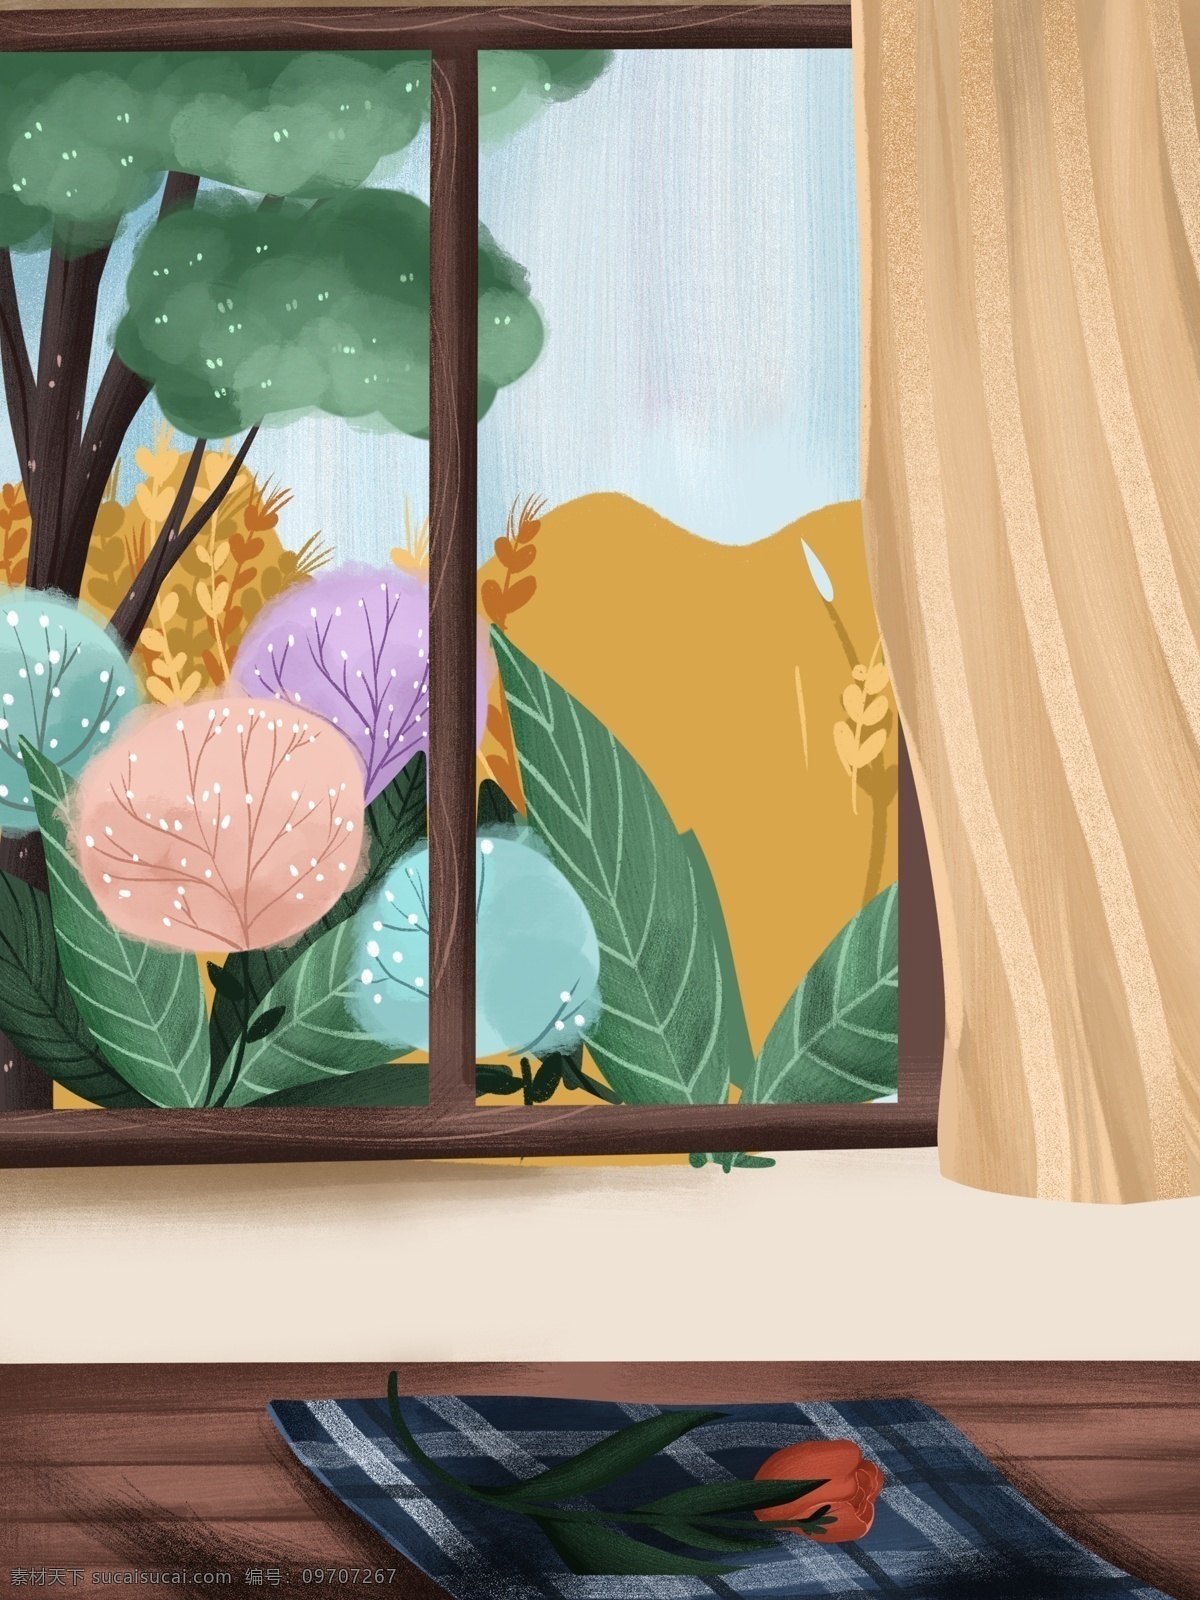 卡通 居家 客厅 窗外 手绘 背景 通用背景 居家生活插画 手绘背景 生活插画背景 窗户 窗帘 植物背景